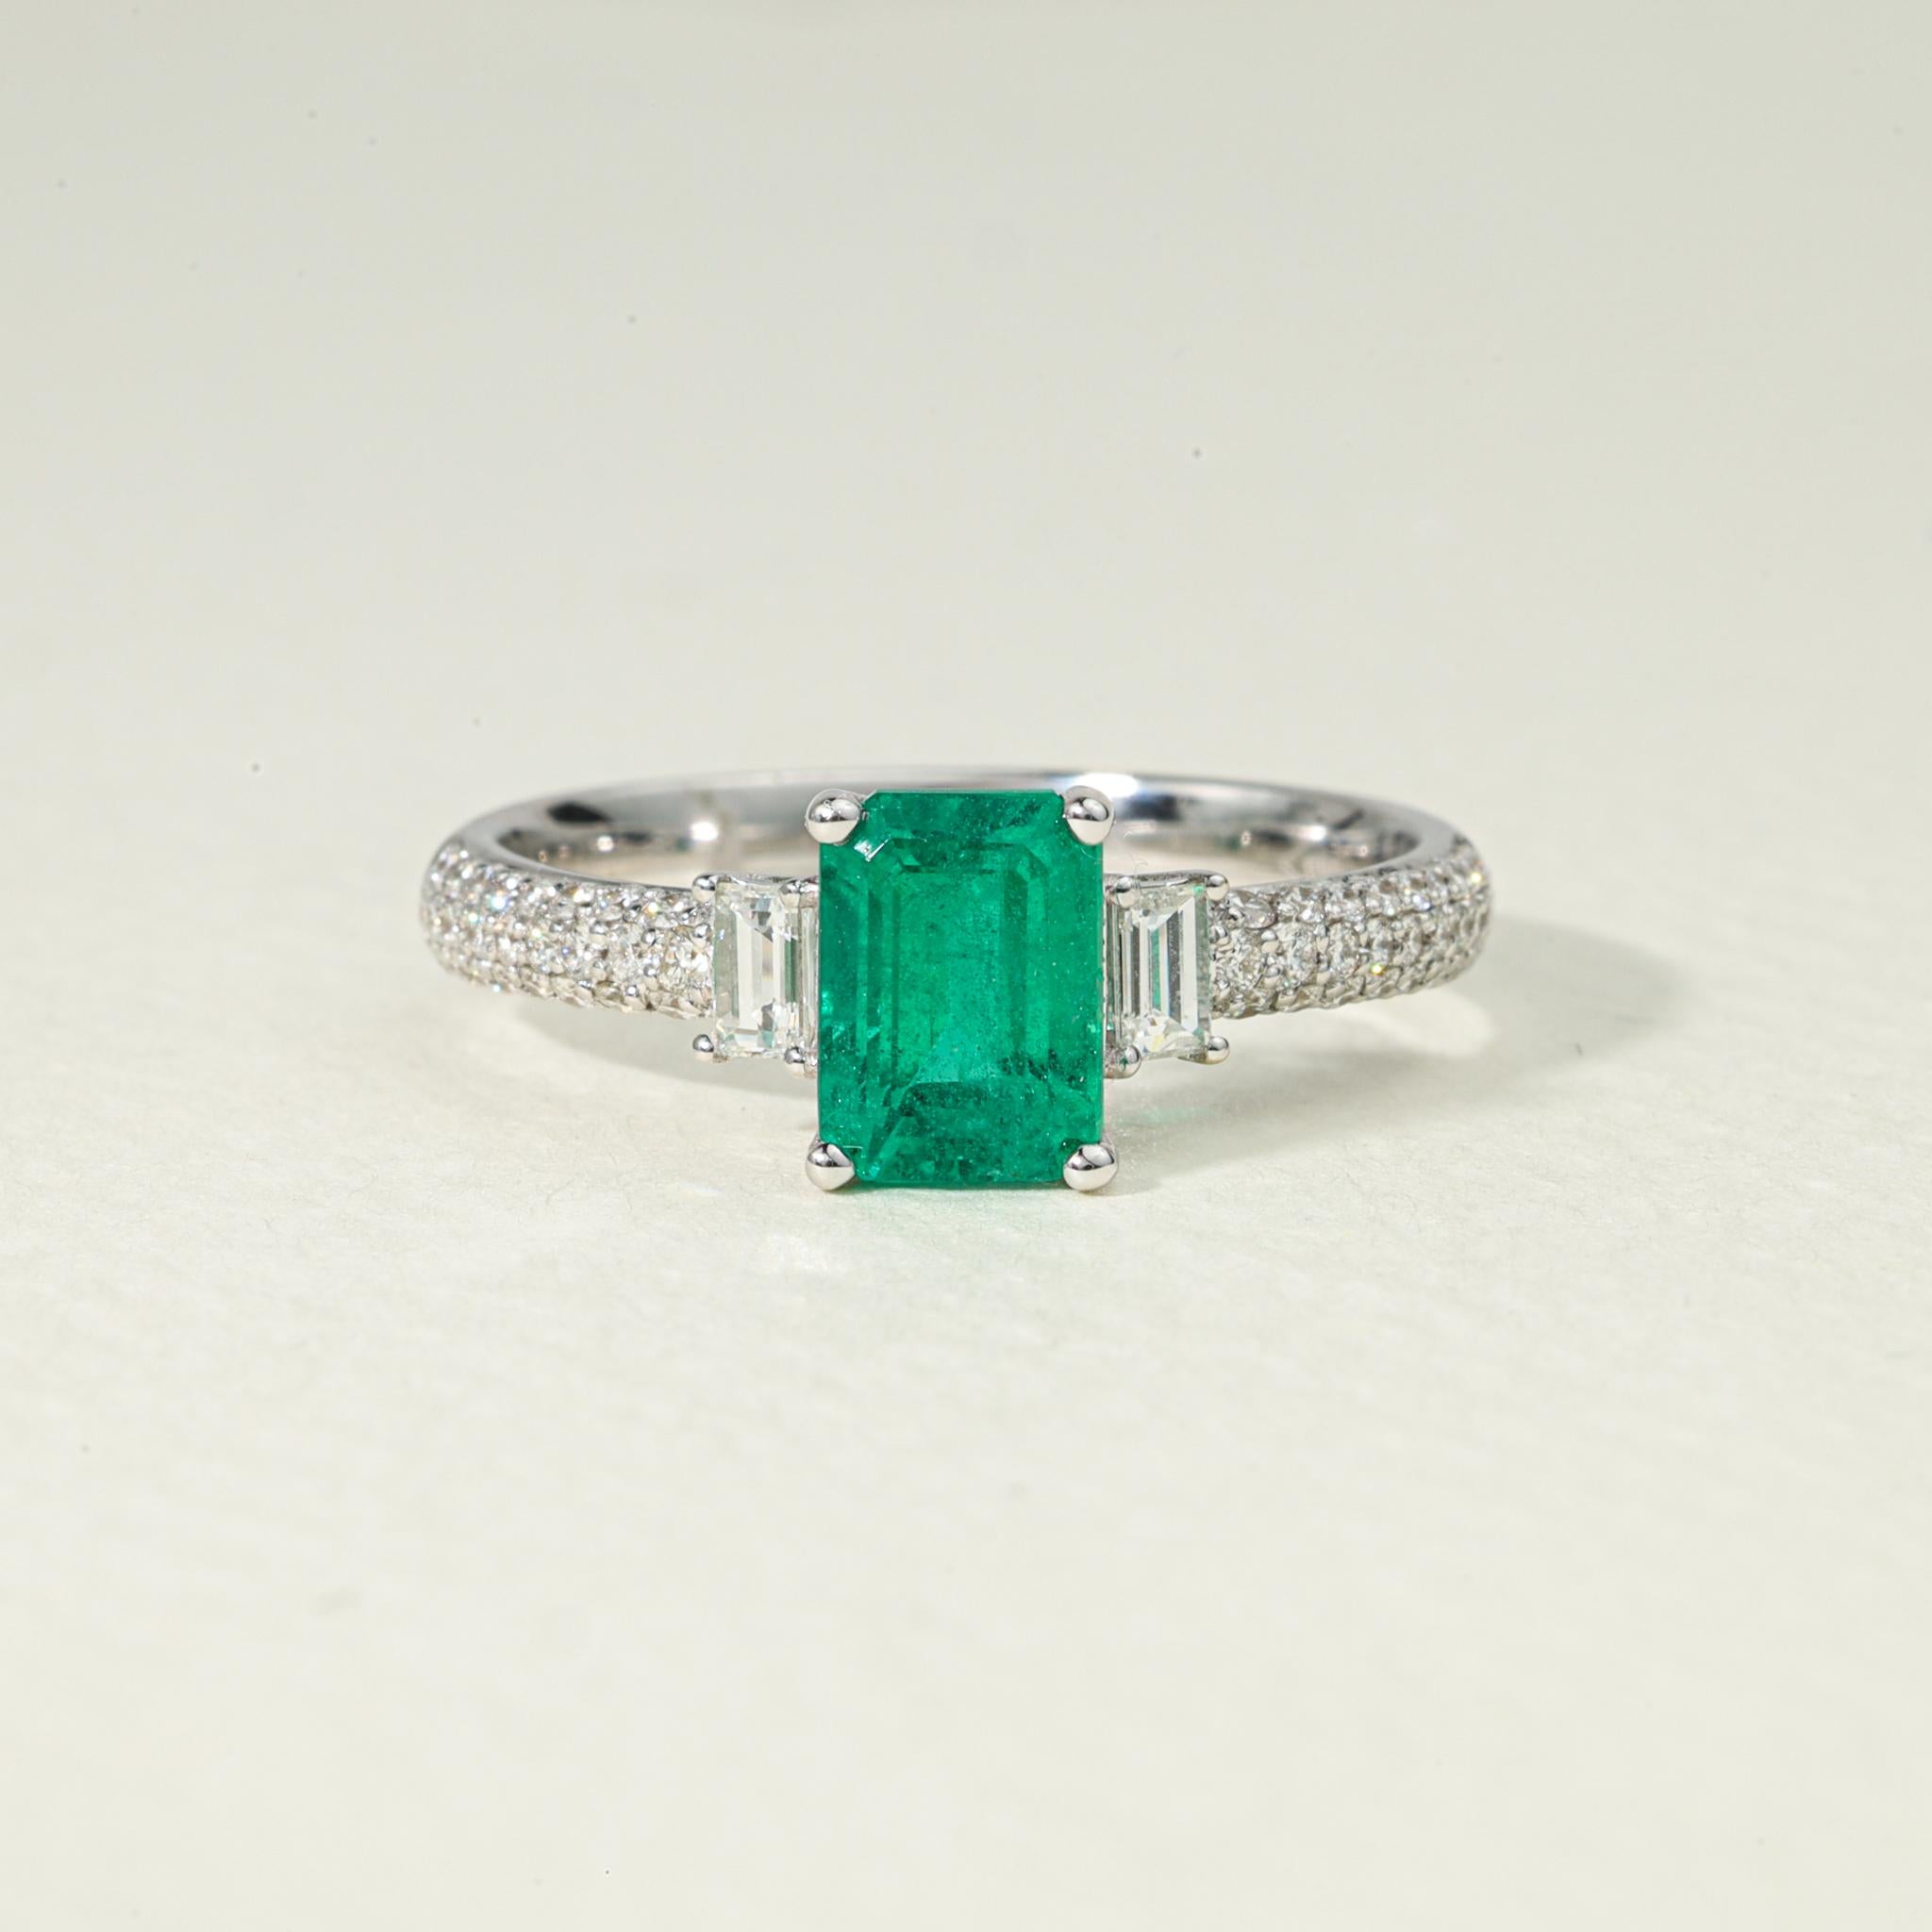 Emerald Cut Natural Emerald Diamond Cocktail Engagement Ring 18k White Gold (bague de fiançailles en or blanc)

Disponible en or blanc 18k.

Le même design peut être réalisé avec d'autres pierres précieuses sur demande.

Détails du produit :

- Or